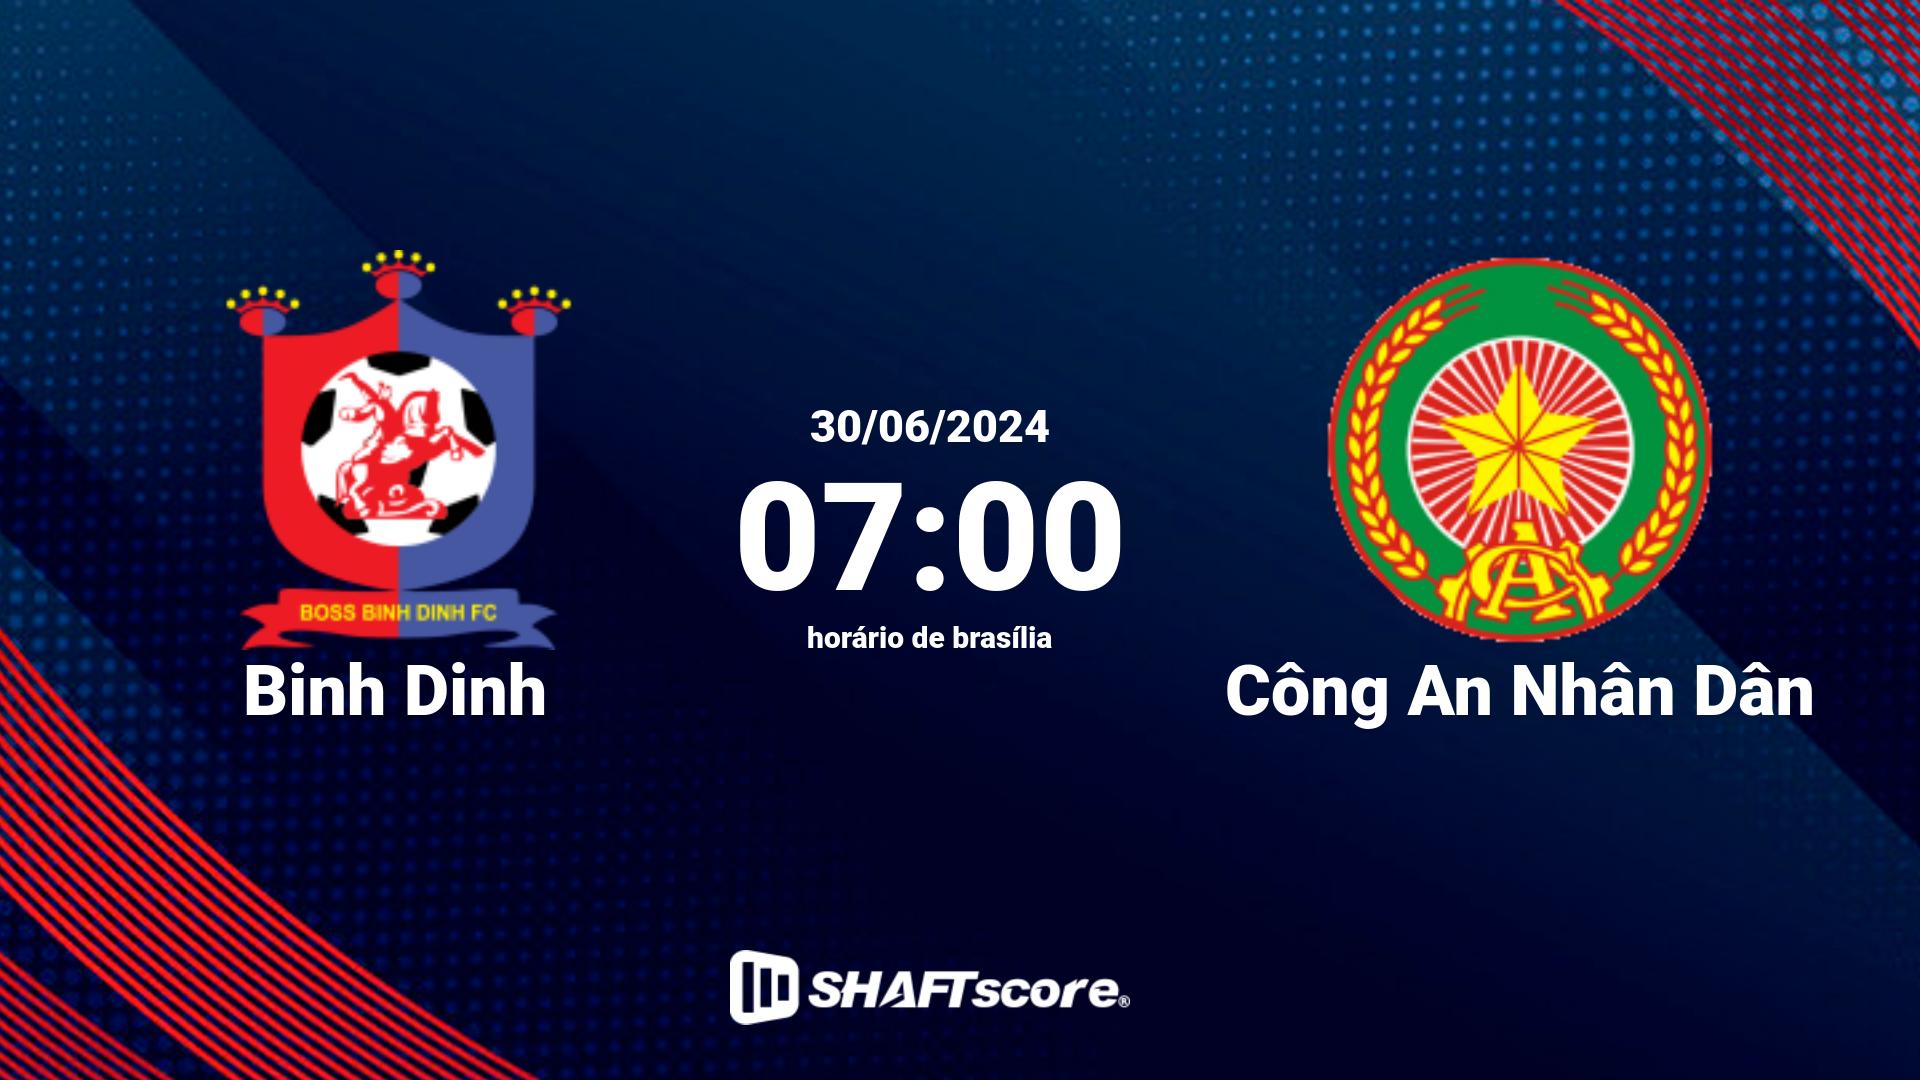 Estatísticas do jogo Binh Dinh vs Công An Nhân Dân 30.06 07:00